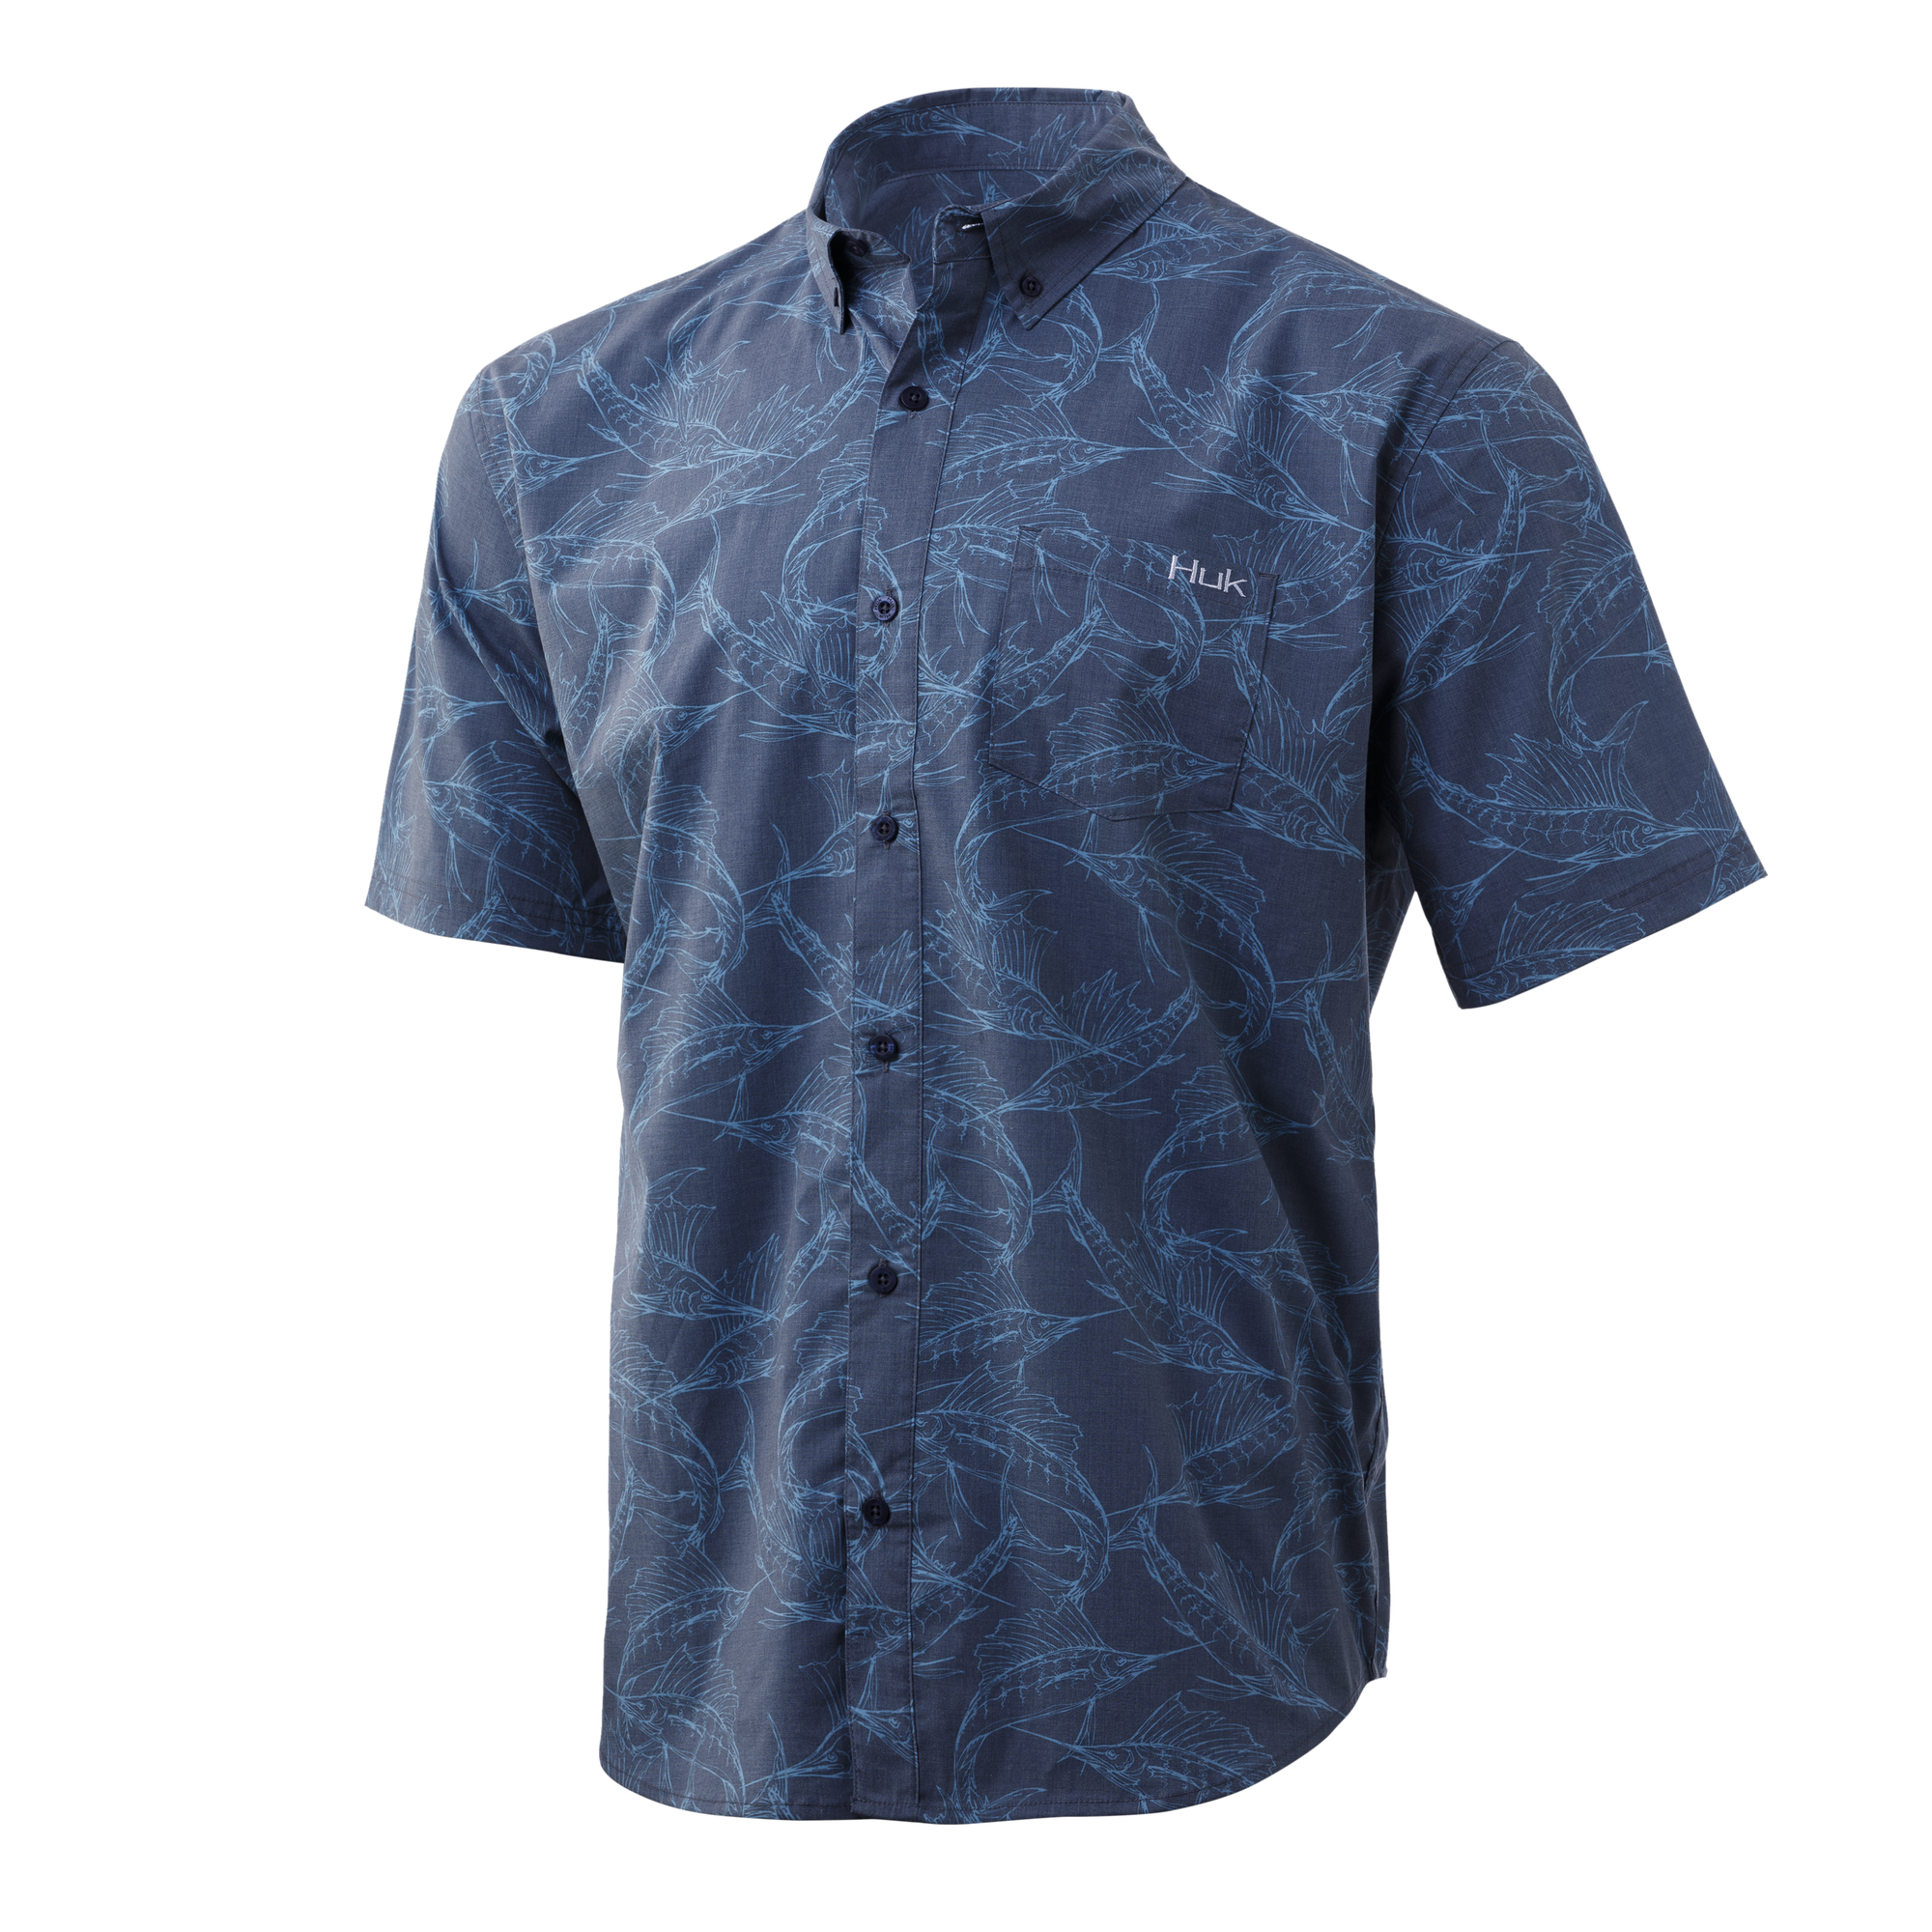 Huk Men&s Kona Woven Short Sleeve Button Down Shirt, XL, Blue